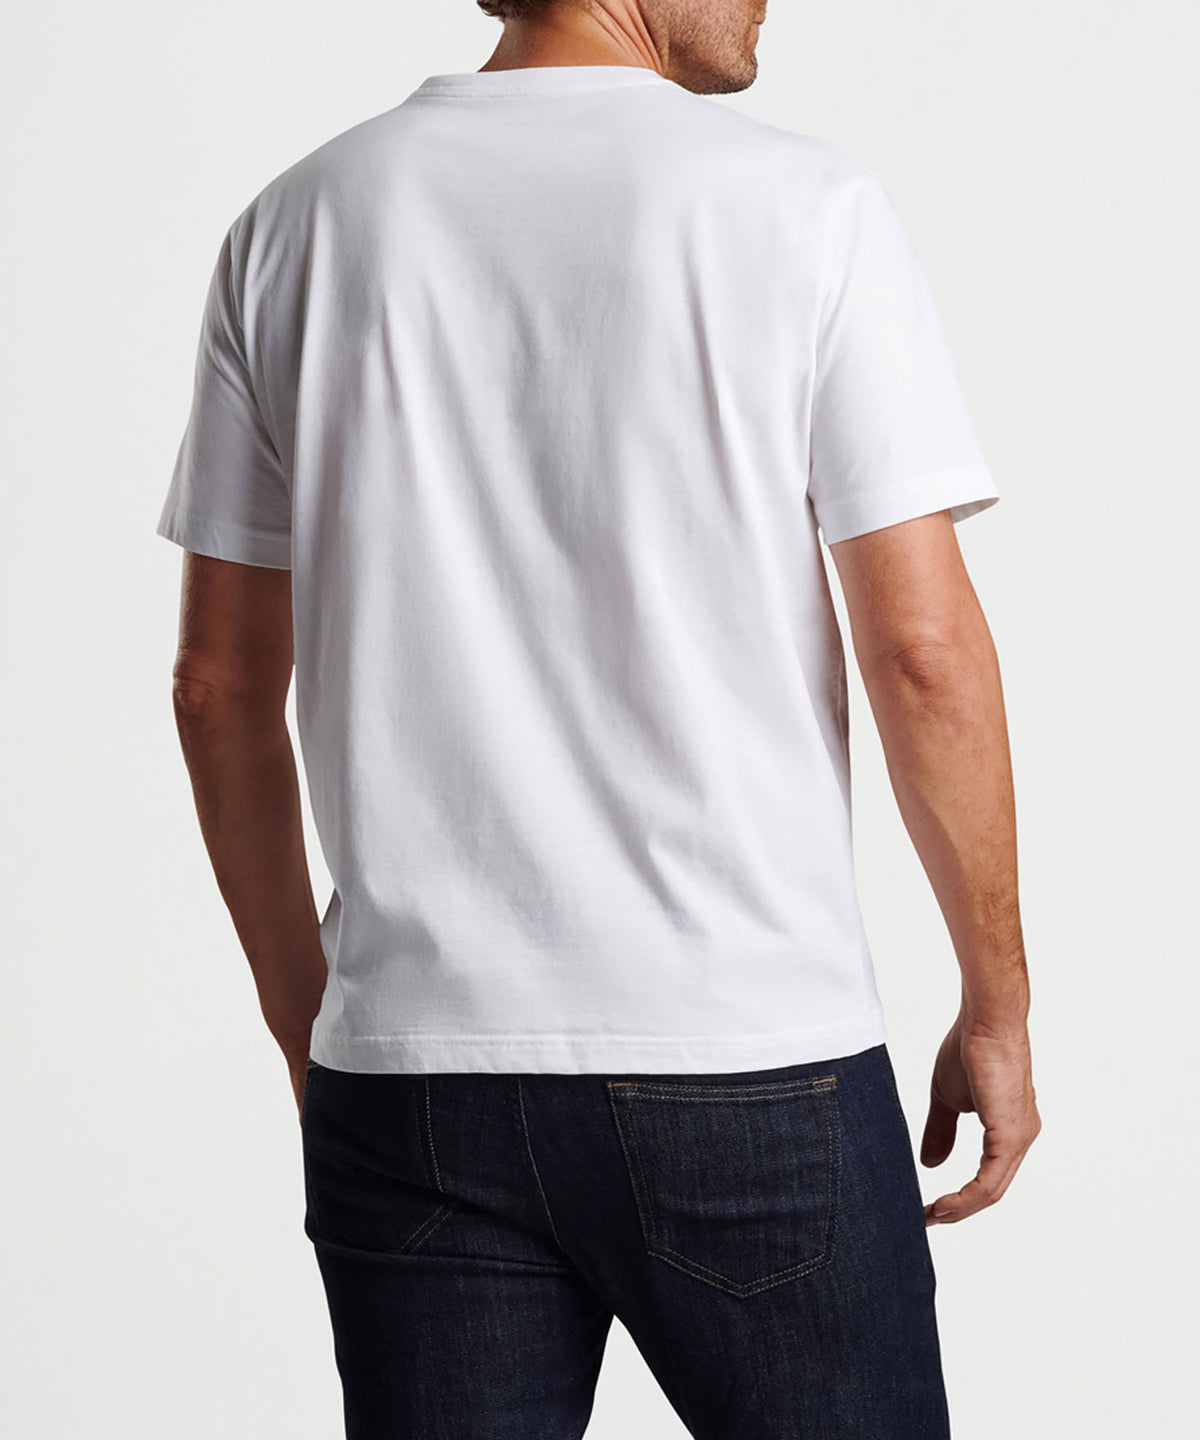 Peter Millar Short Sleeve Seaside Pocket T-Shirt, Men's Big & Tall